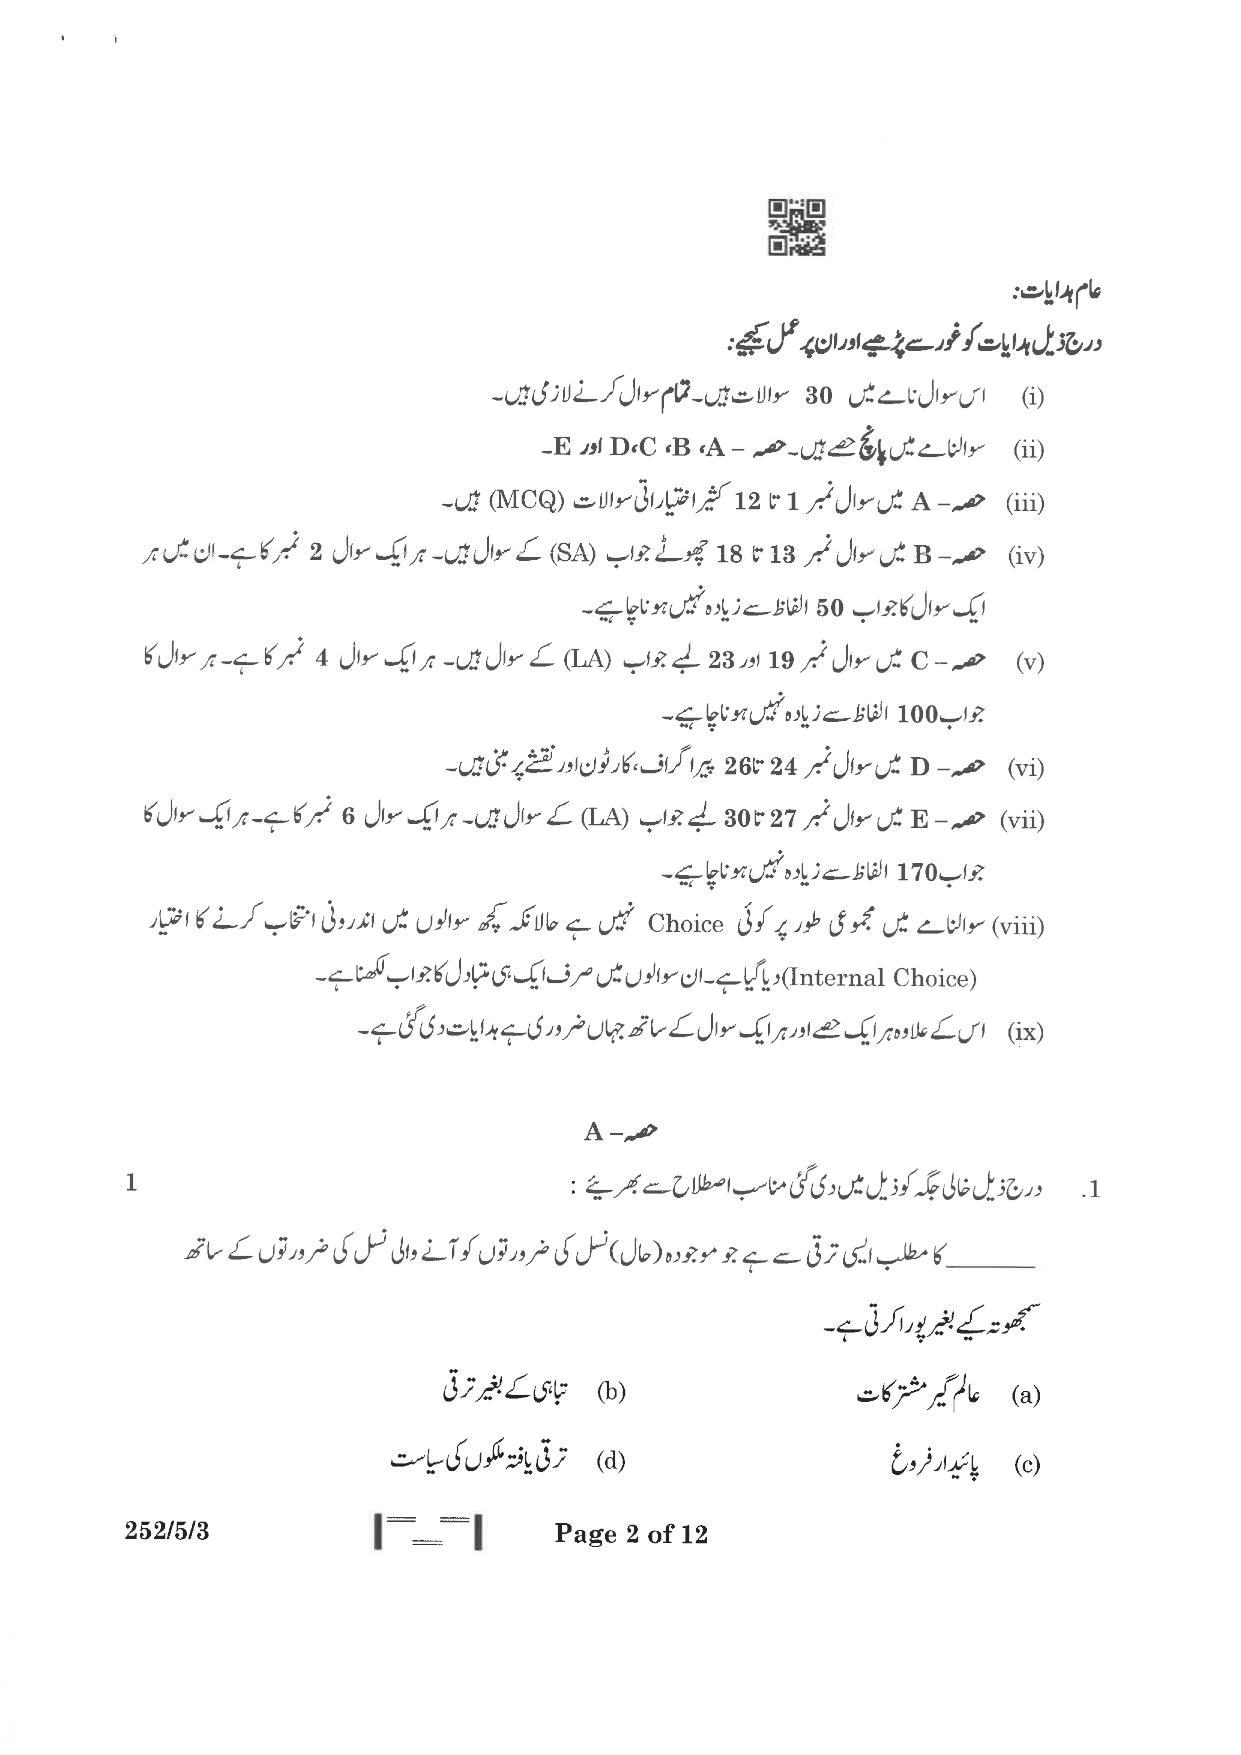 CBSE Class 12 252-5-3 Political Science Urdu Version 2023 Question Paper - Page 2